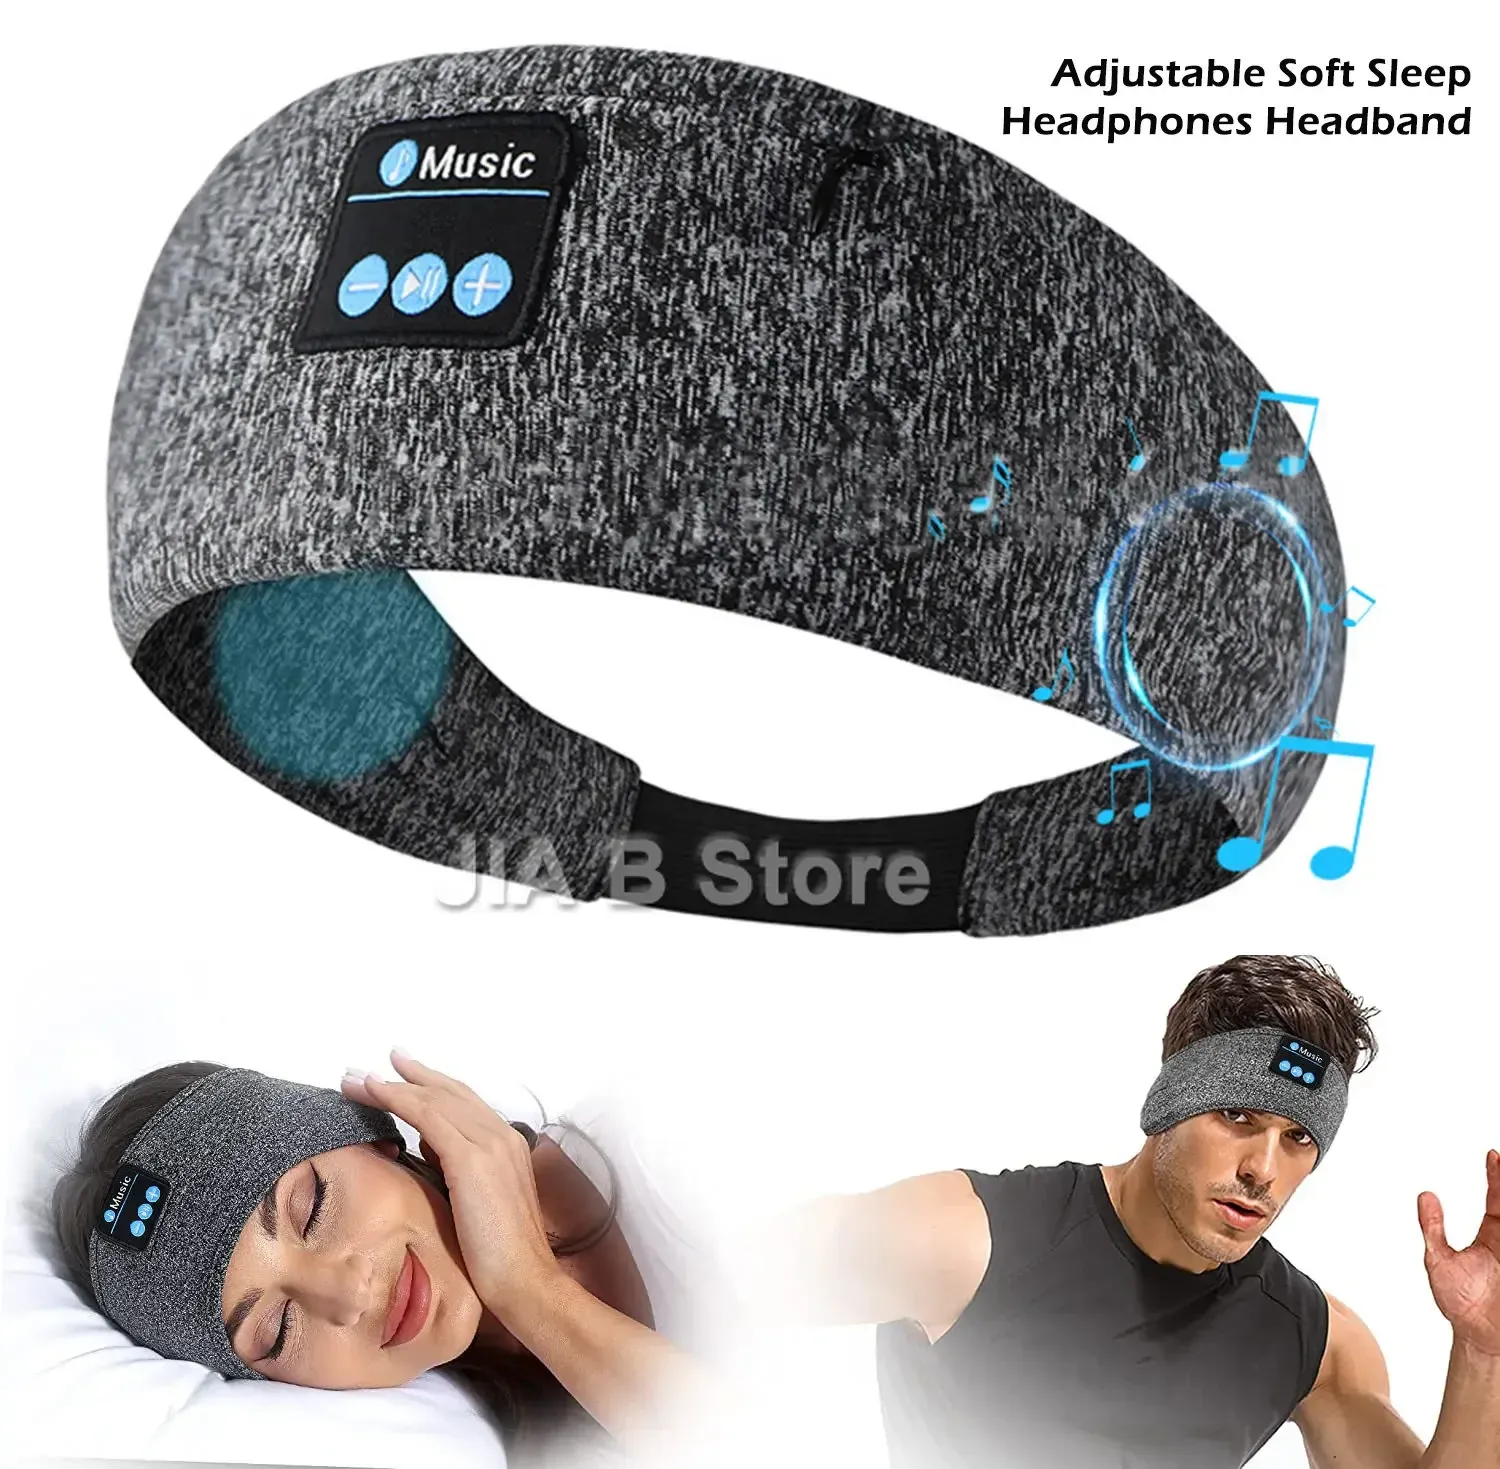 Casque/casque réglable doux Bluetooth casque de sommeil bandeau avec haut-parleurs intégrés parfait pour dormir sur le côté, entraînement, course, yoga, voyage